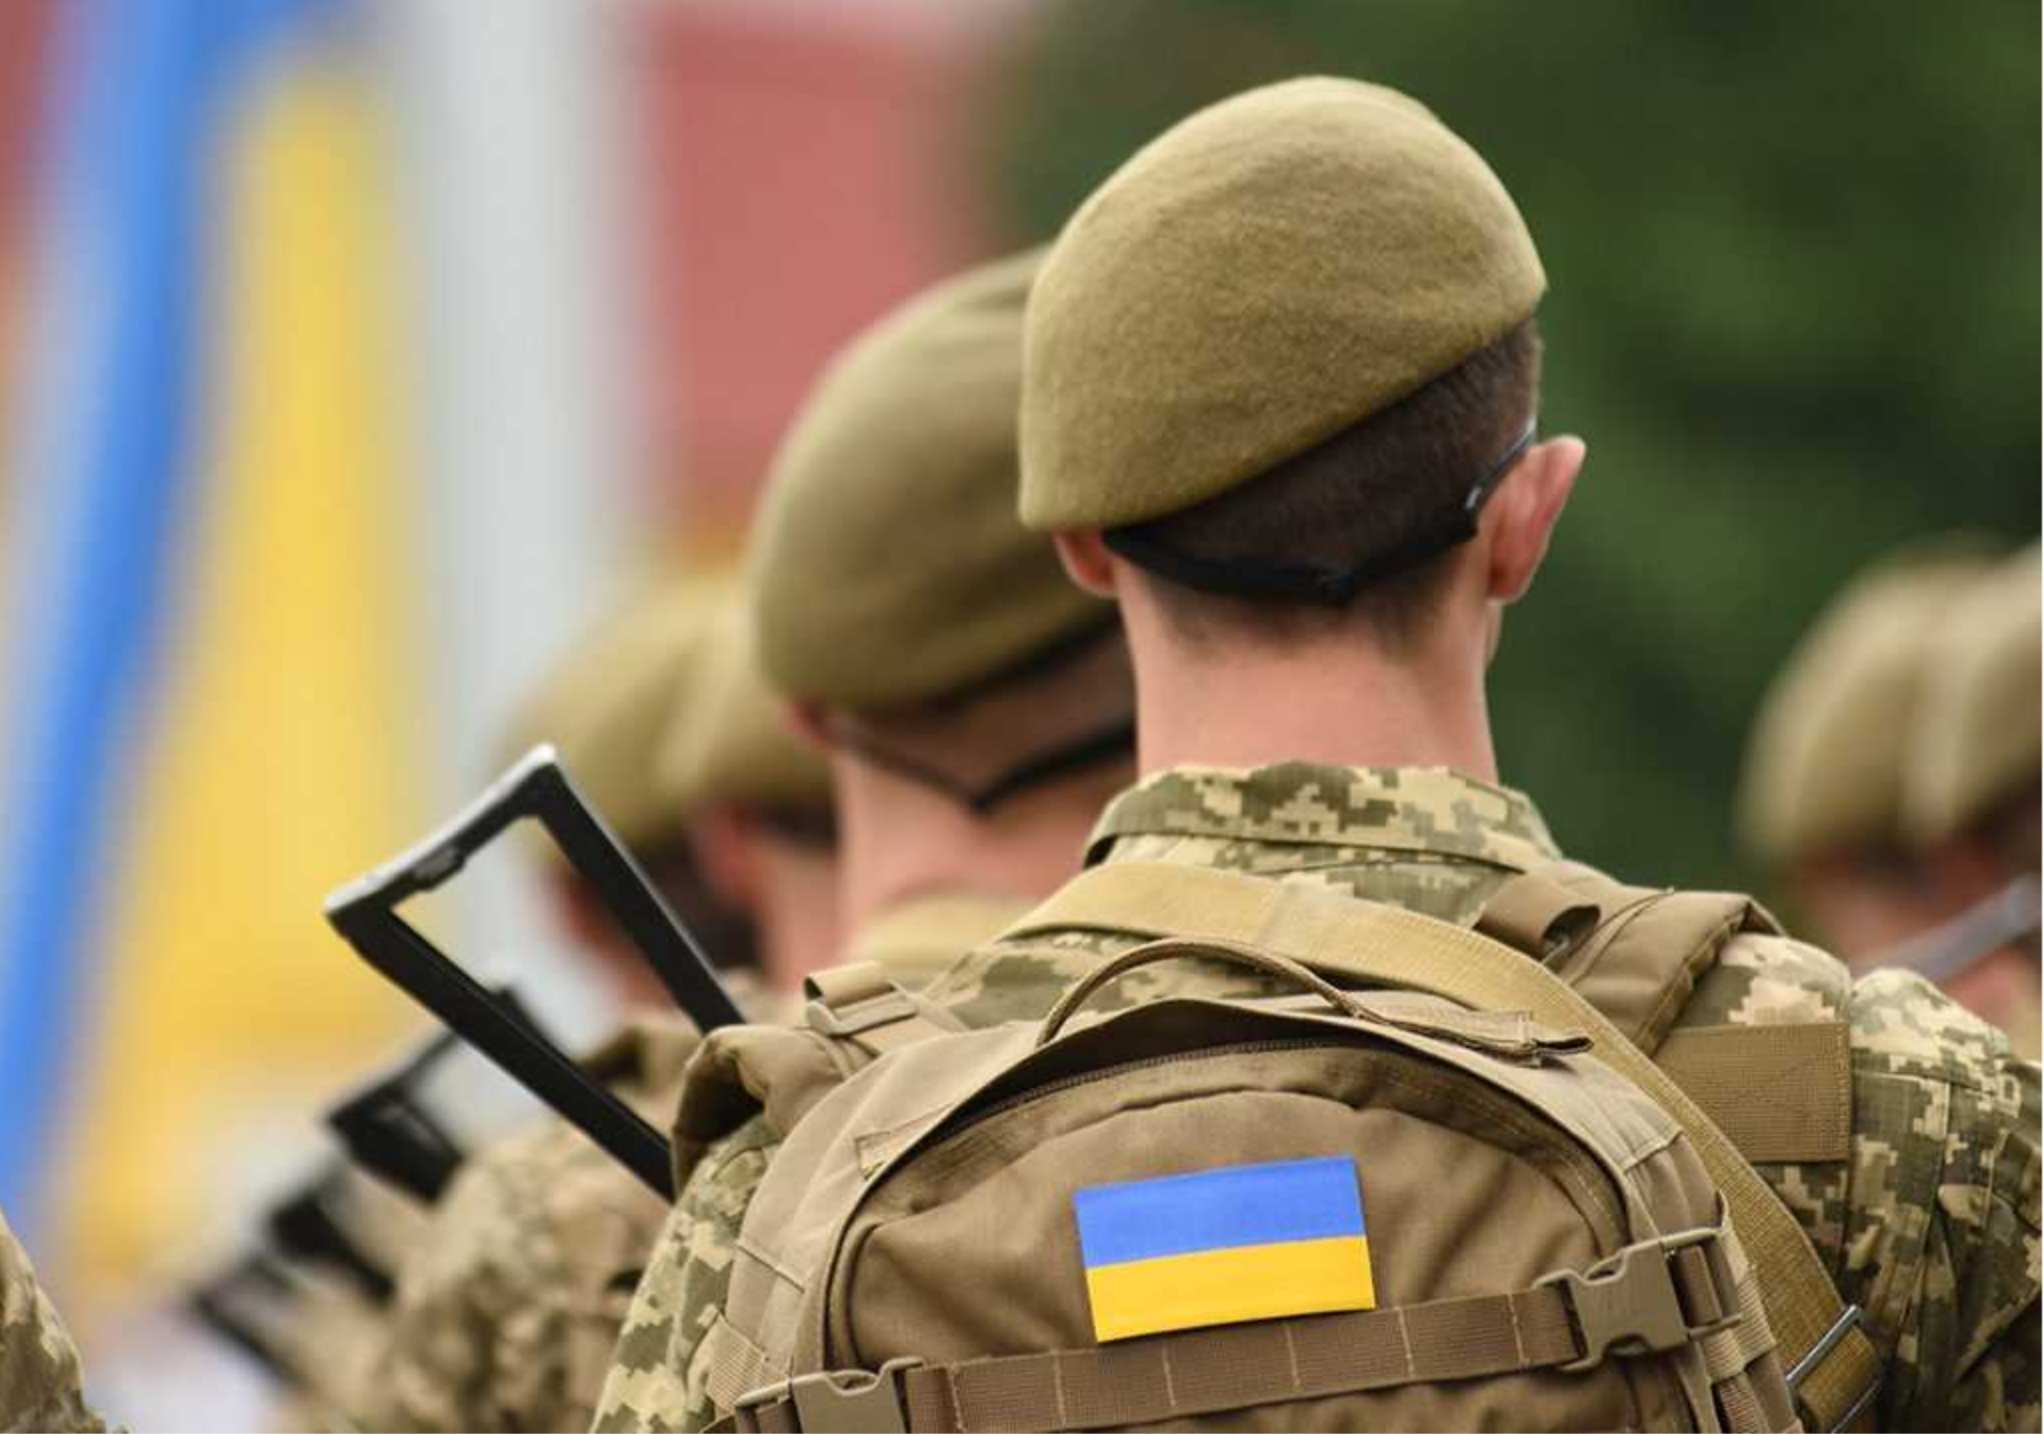 Як військовозобов'язані спортсмени тікають з України